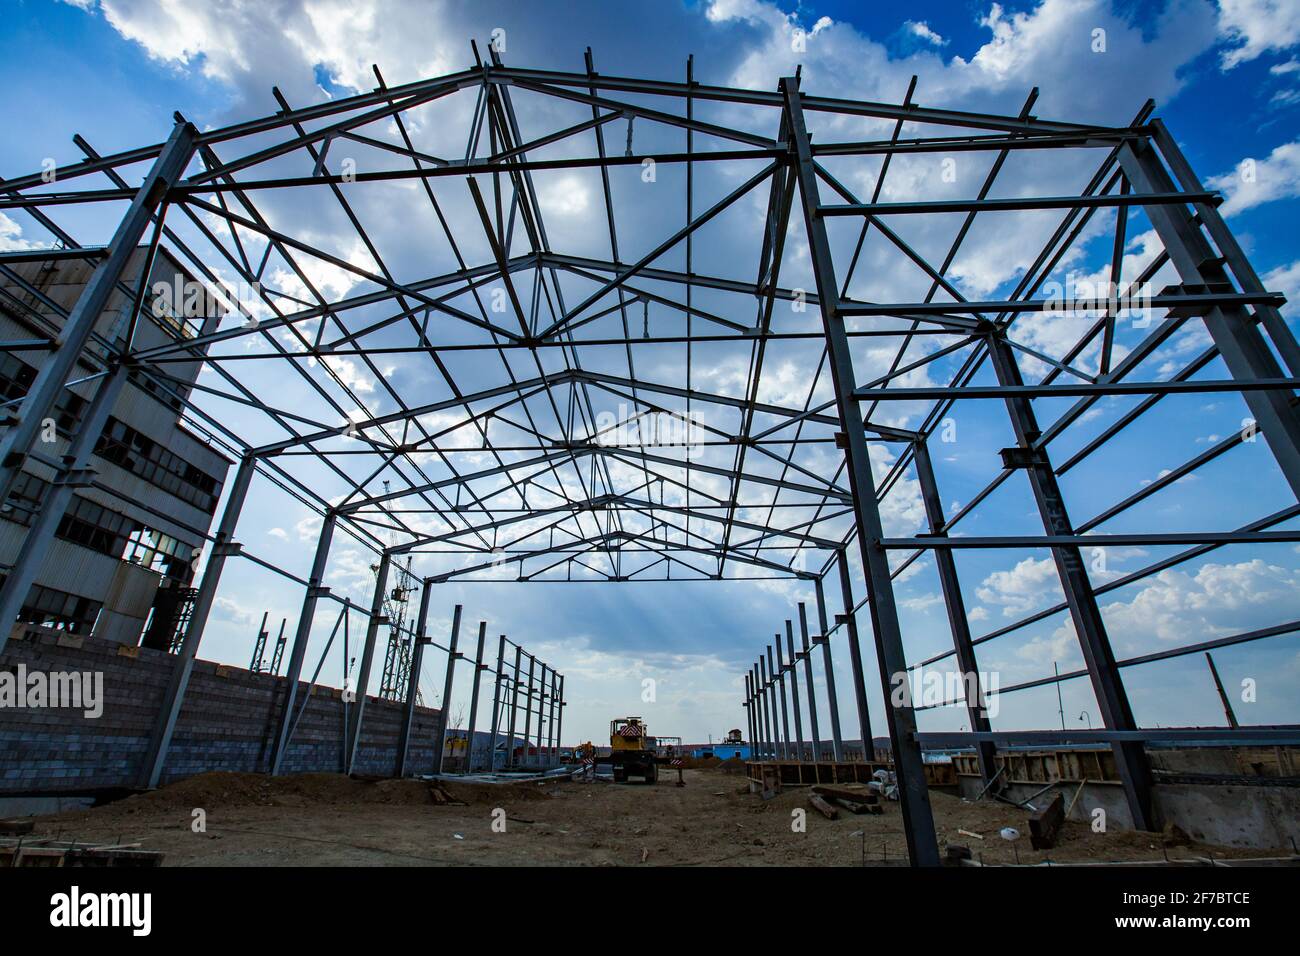 Bau eines neuen Industriegebäudes. Montage der Stahlkonstruktion. Blauer Himmel, Wolken. Stockfoto